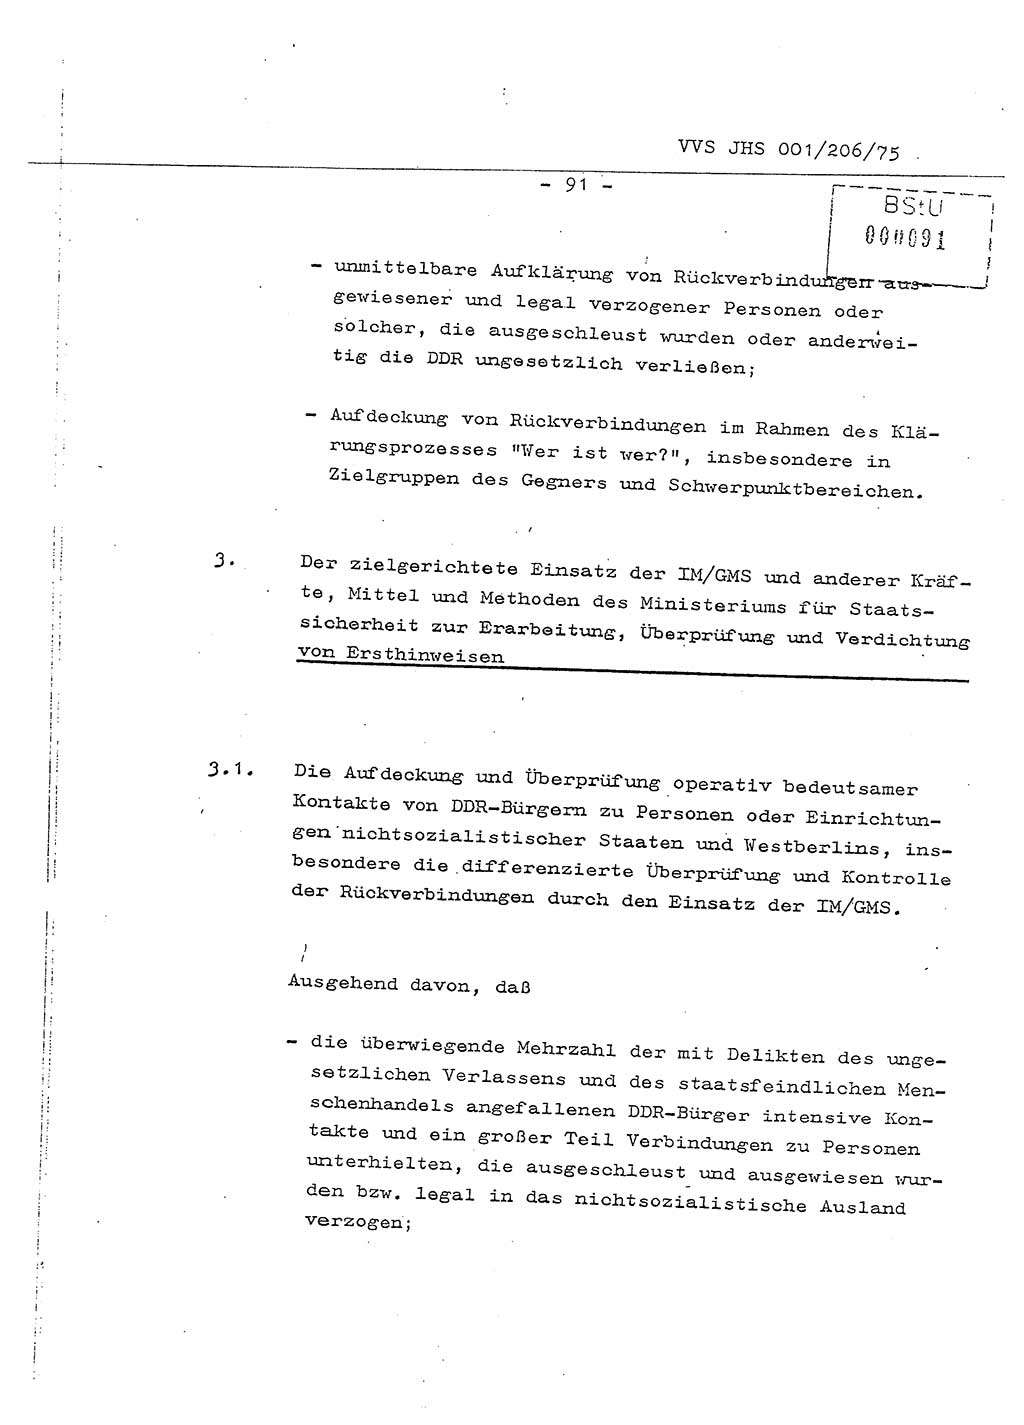 Dissertation Generalmajor Manfred Hummitzsch (Leiter der BV Leipzig), Generalmajor Heinz Fiedler (HA Ⅵ), Oberst Rolf Fister (HA Ⅸ), Ministerium für Staatssicherheit (MfS) [Deutsche Demokratische Republik (DDR)], Juristische Hochschule (JHS), Vertrauliche Verschlußsache (VVS) 001-206/75, Potsdam 1975, Seite 91 (Diss. MfS DDR JHS VVS 001-206/75 1975, S. 91)